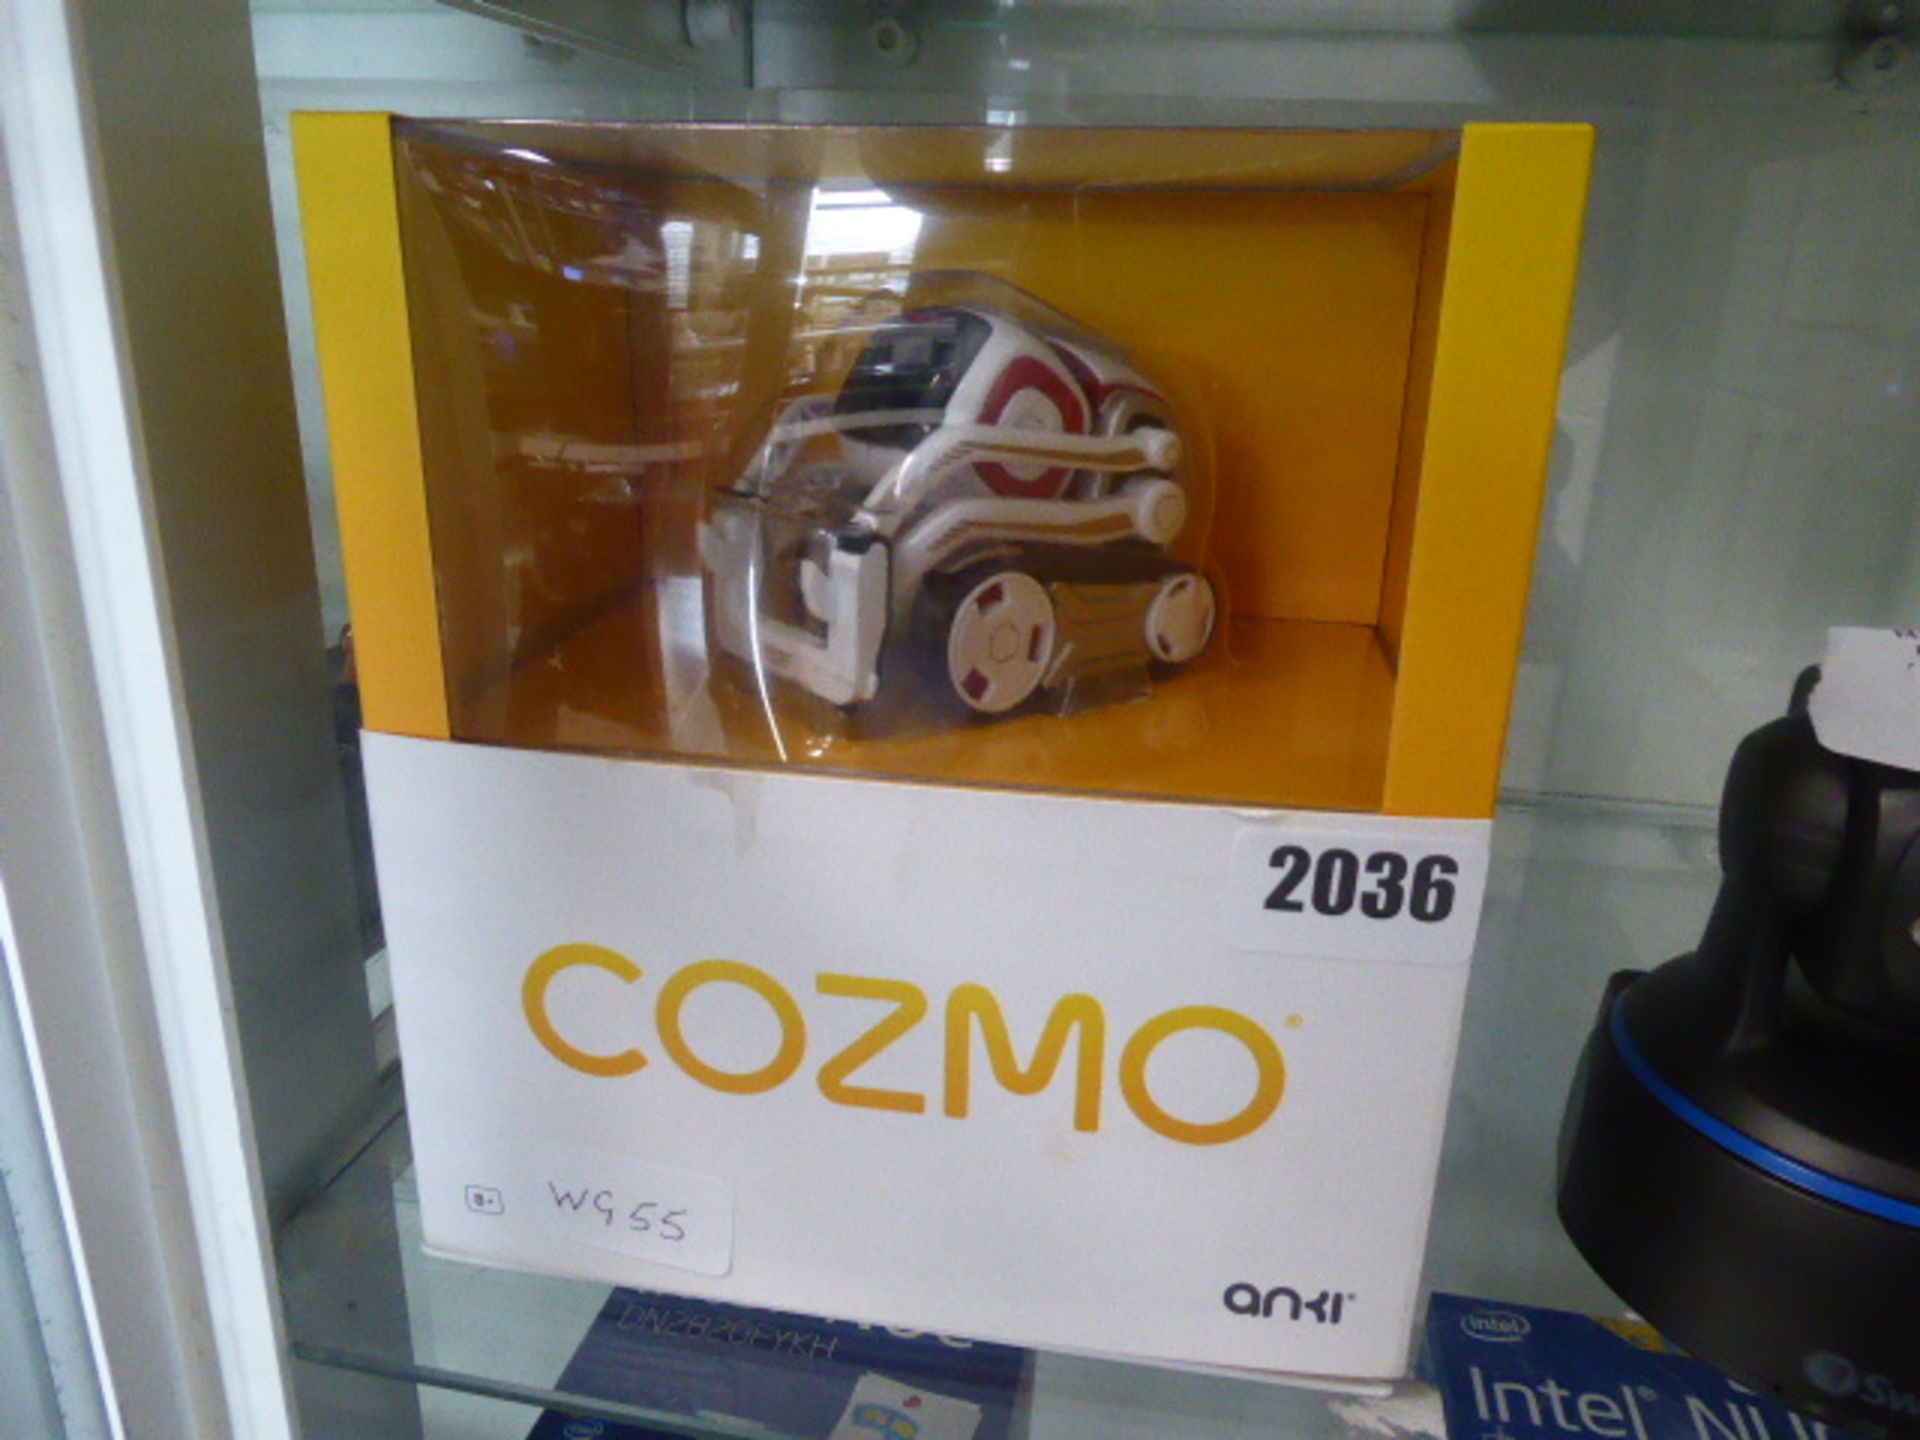 Anki Cozmo toy with box